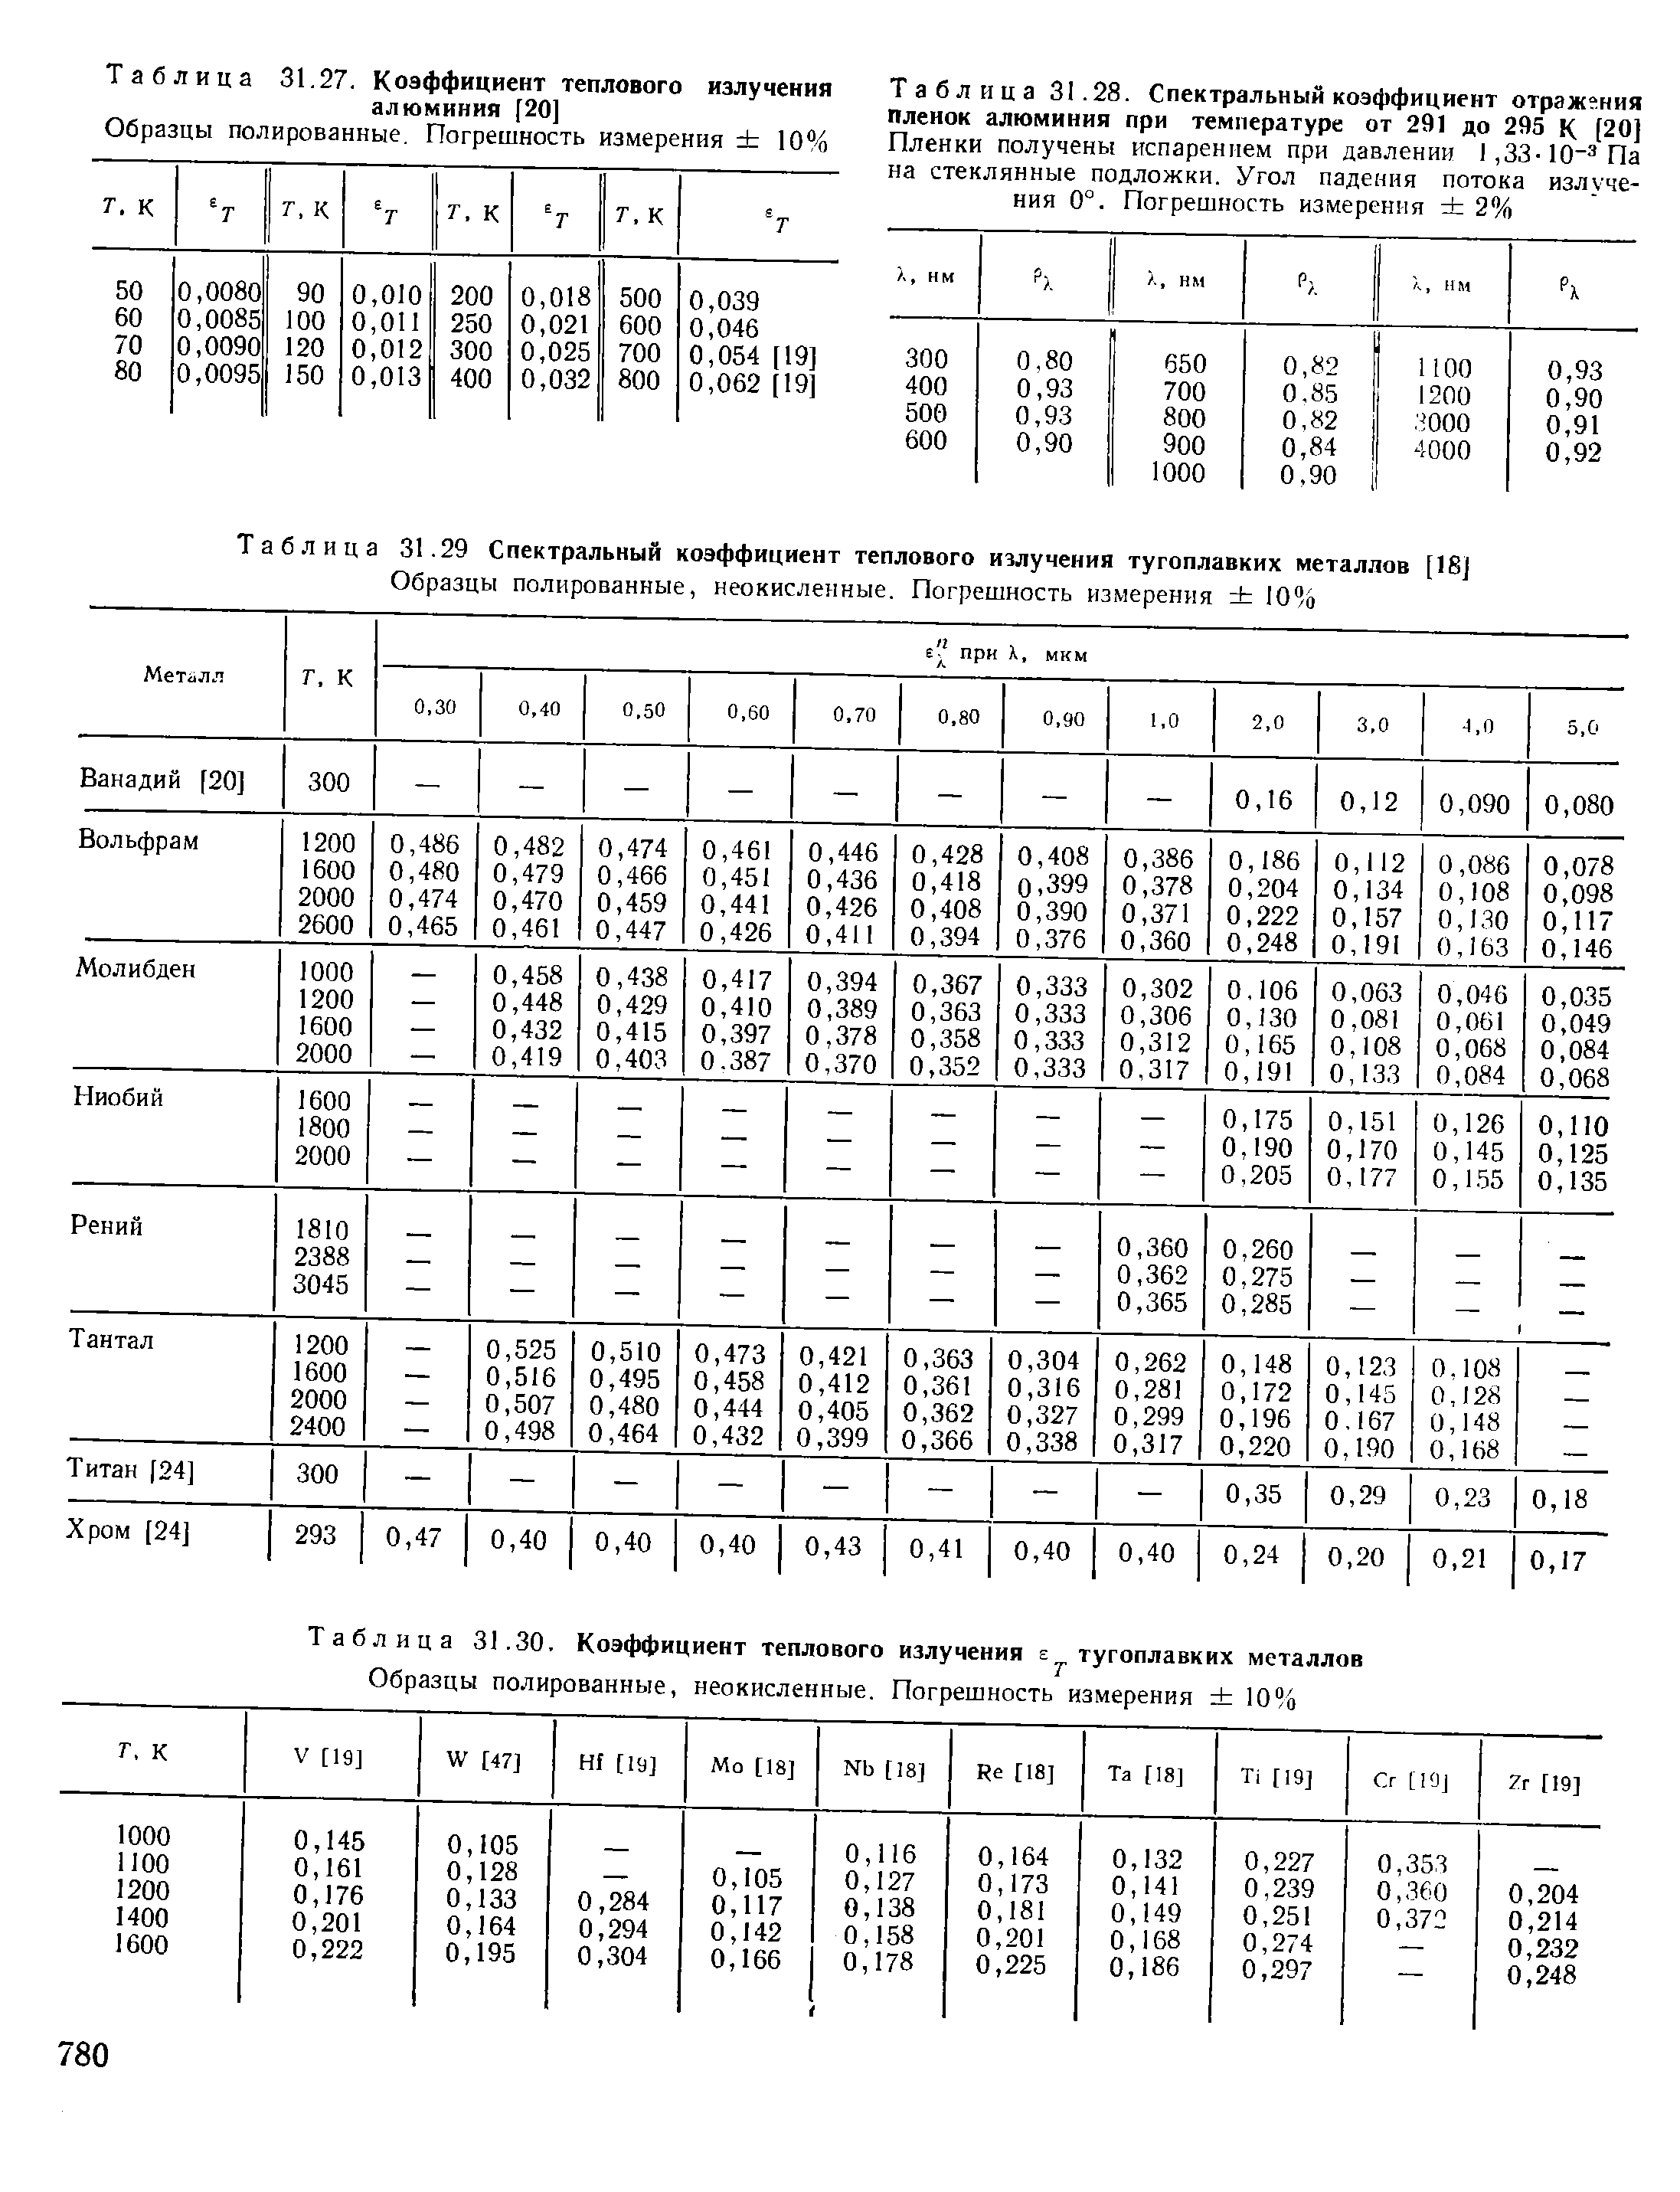 Таблица 31.29 Спектральный коэффициент теплового излучения тугоплавких металлов [1SJ
